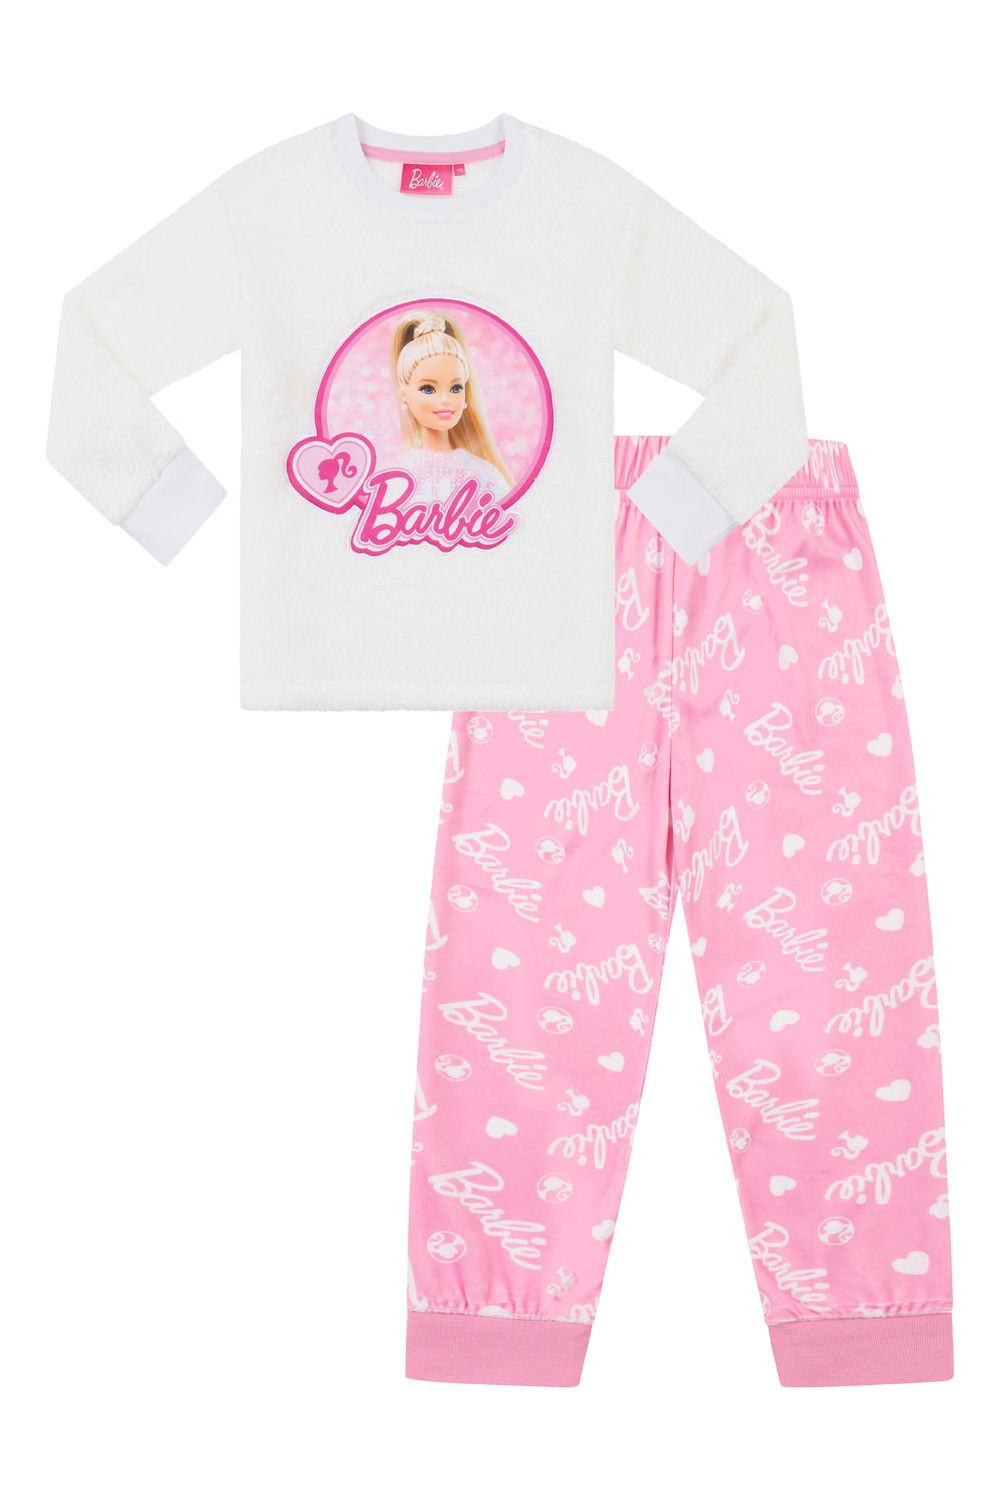 Barbie Girls Luxury Fleece Long Pyjama Set 3 to 9 Years